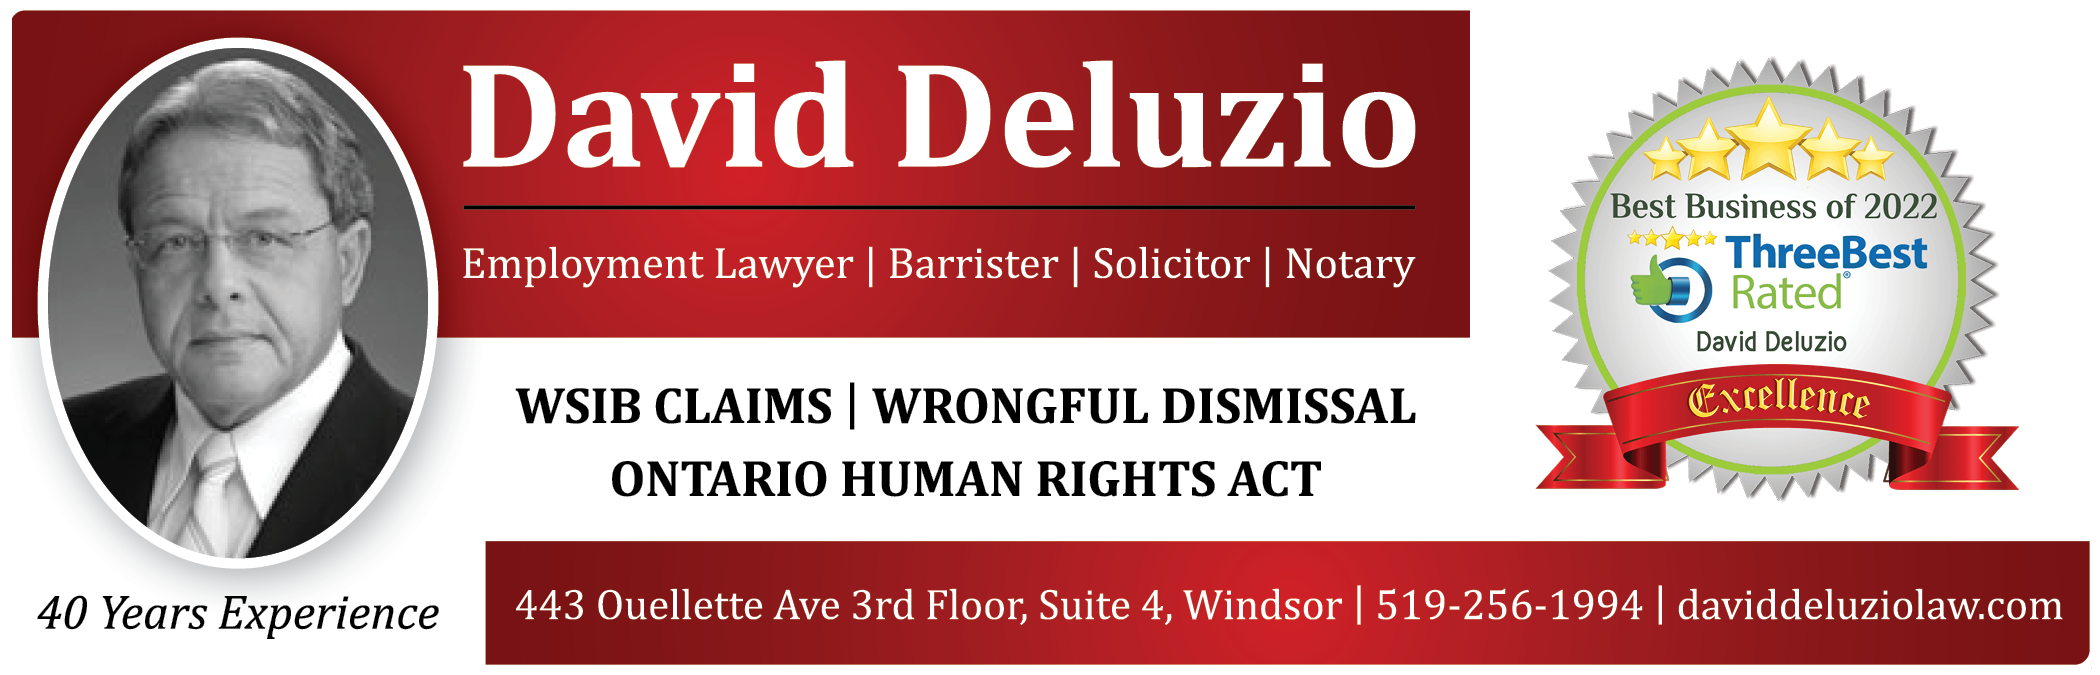 David Deluzio Law Firm